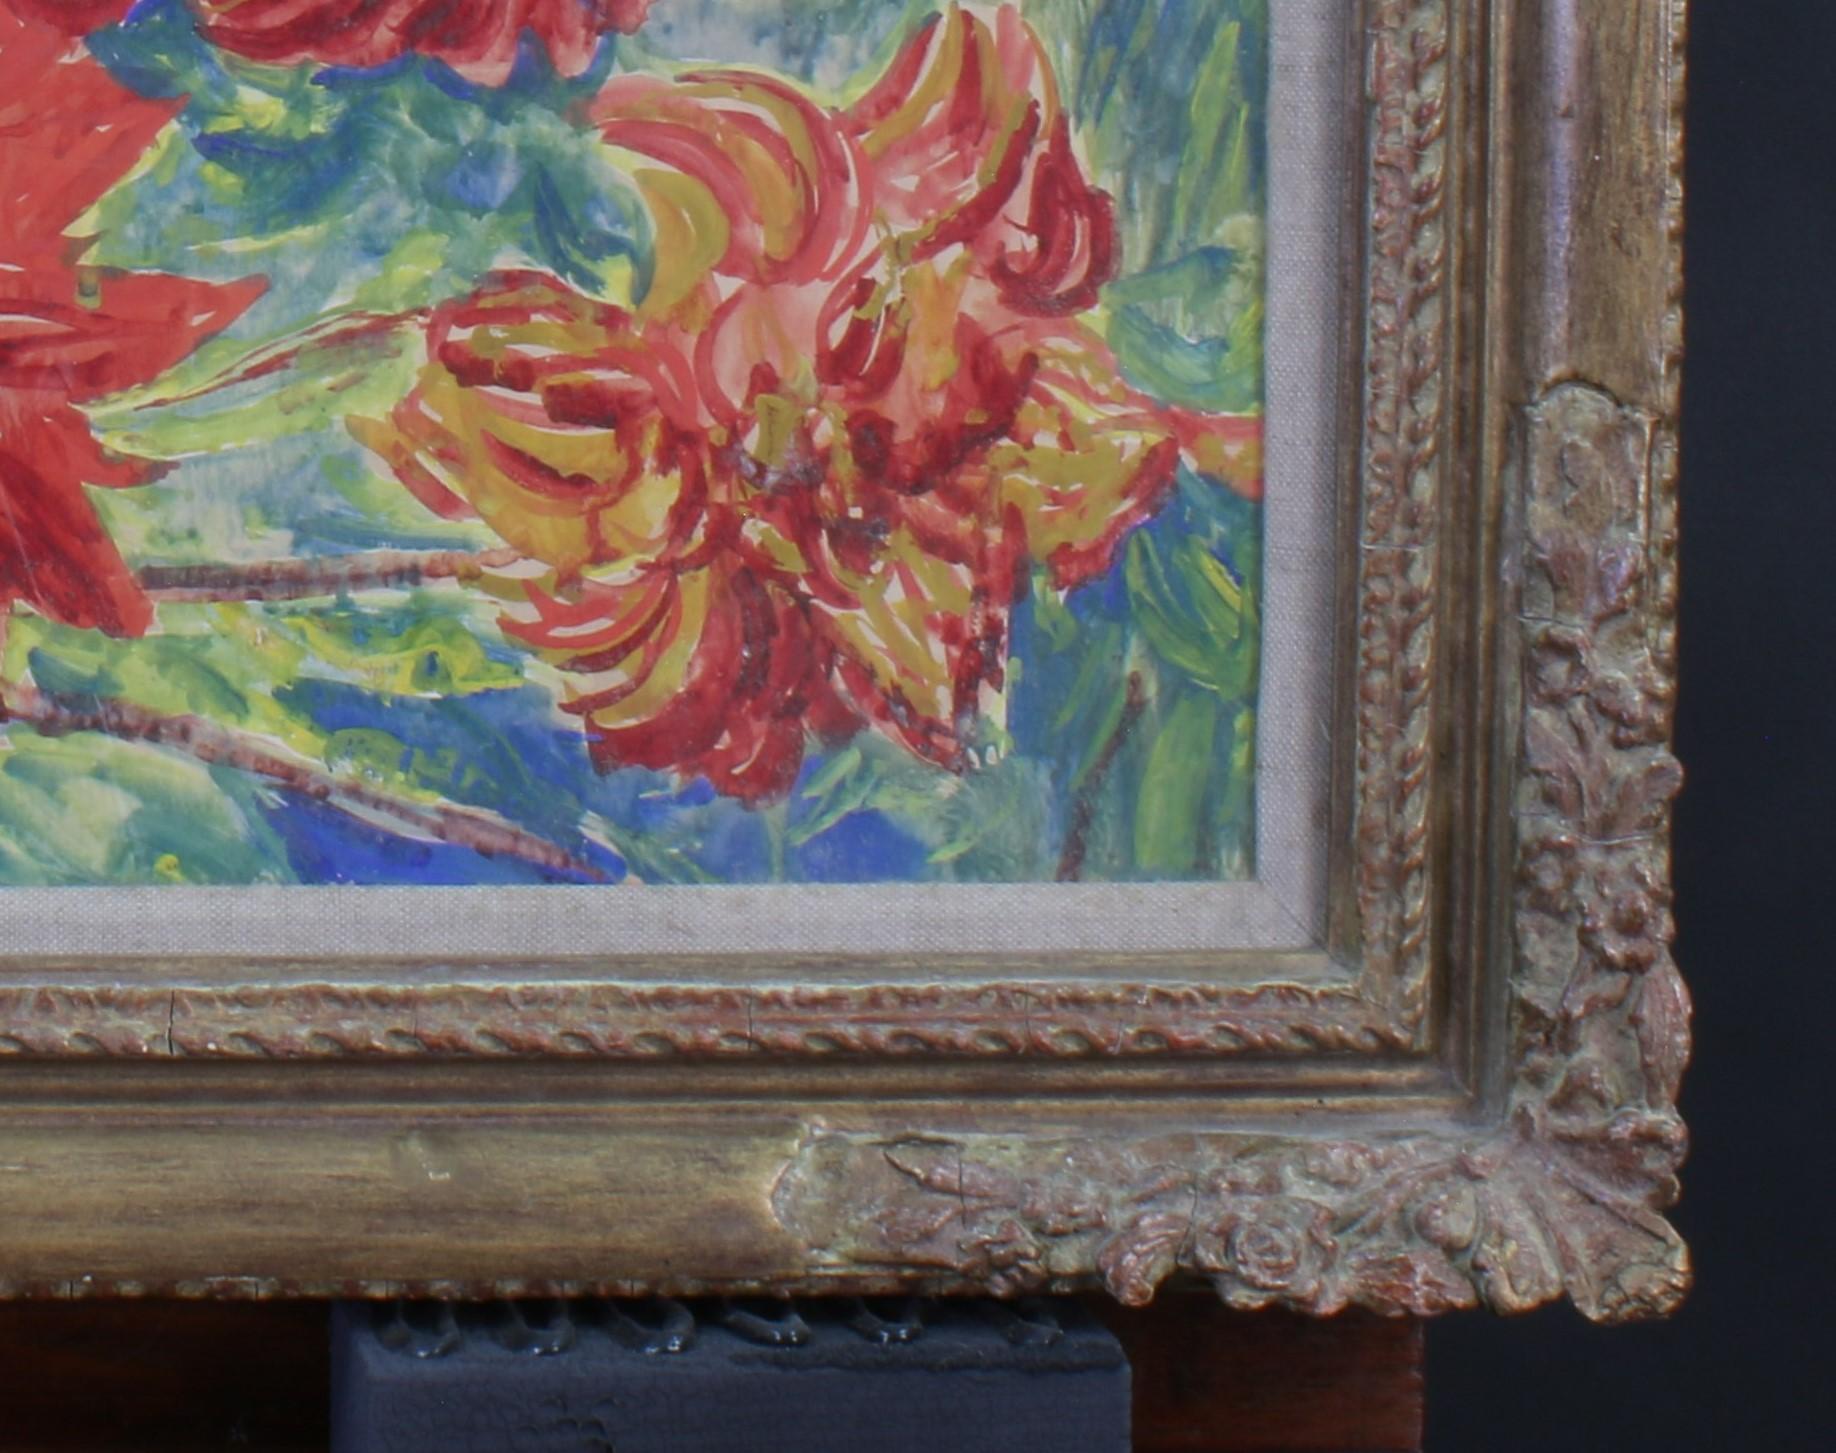 Jacob Epstein a réalisé un certain nombre d'aquarelles de fleurs au cours des années 1930 jusqu'à l'épidémie de 1939. Cette image particulière est très bien équilibrée et est l'une des meilleures présentées dans des couleurs vives avec une signature